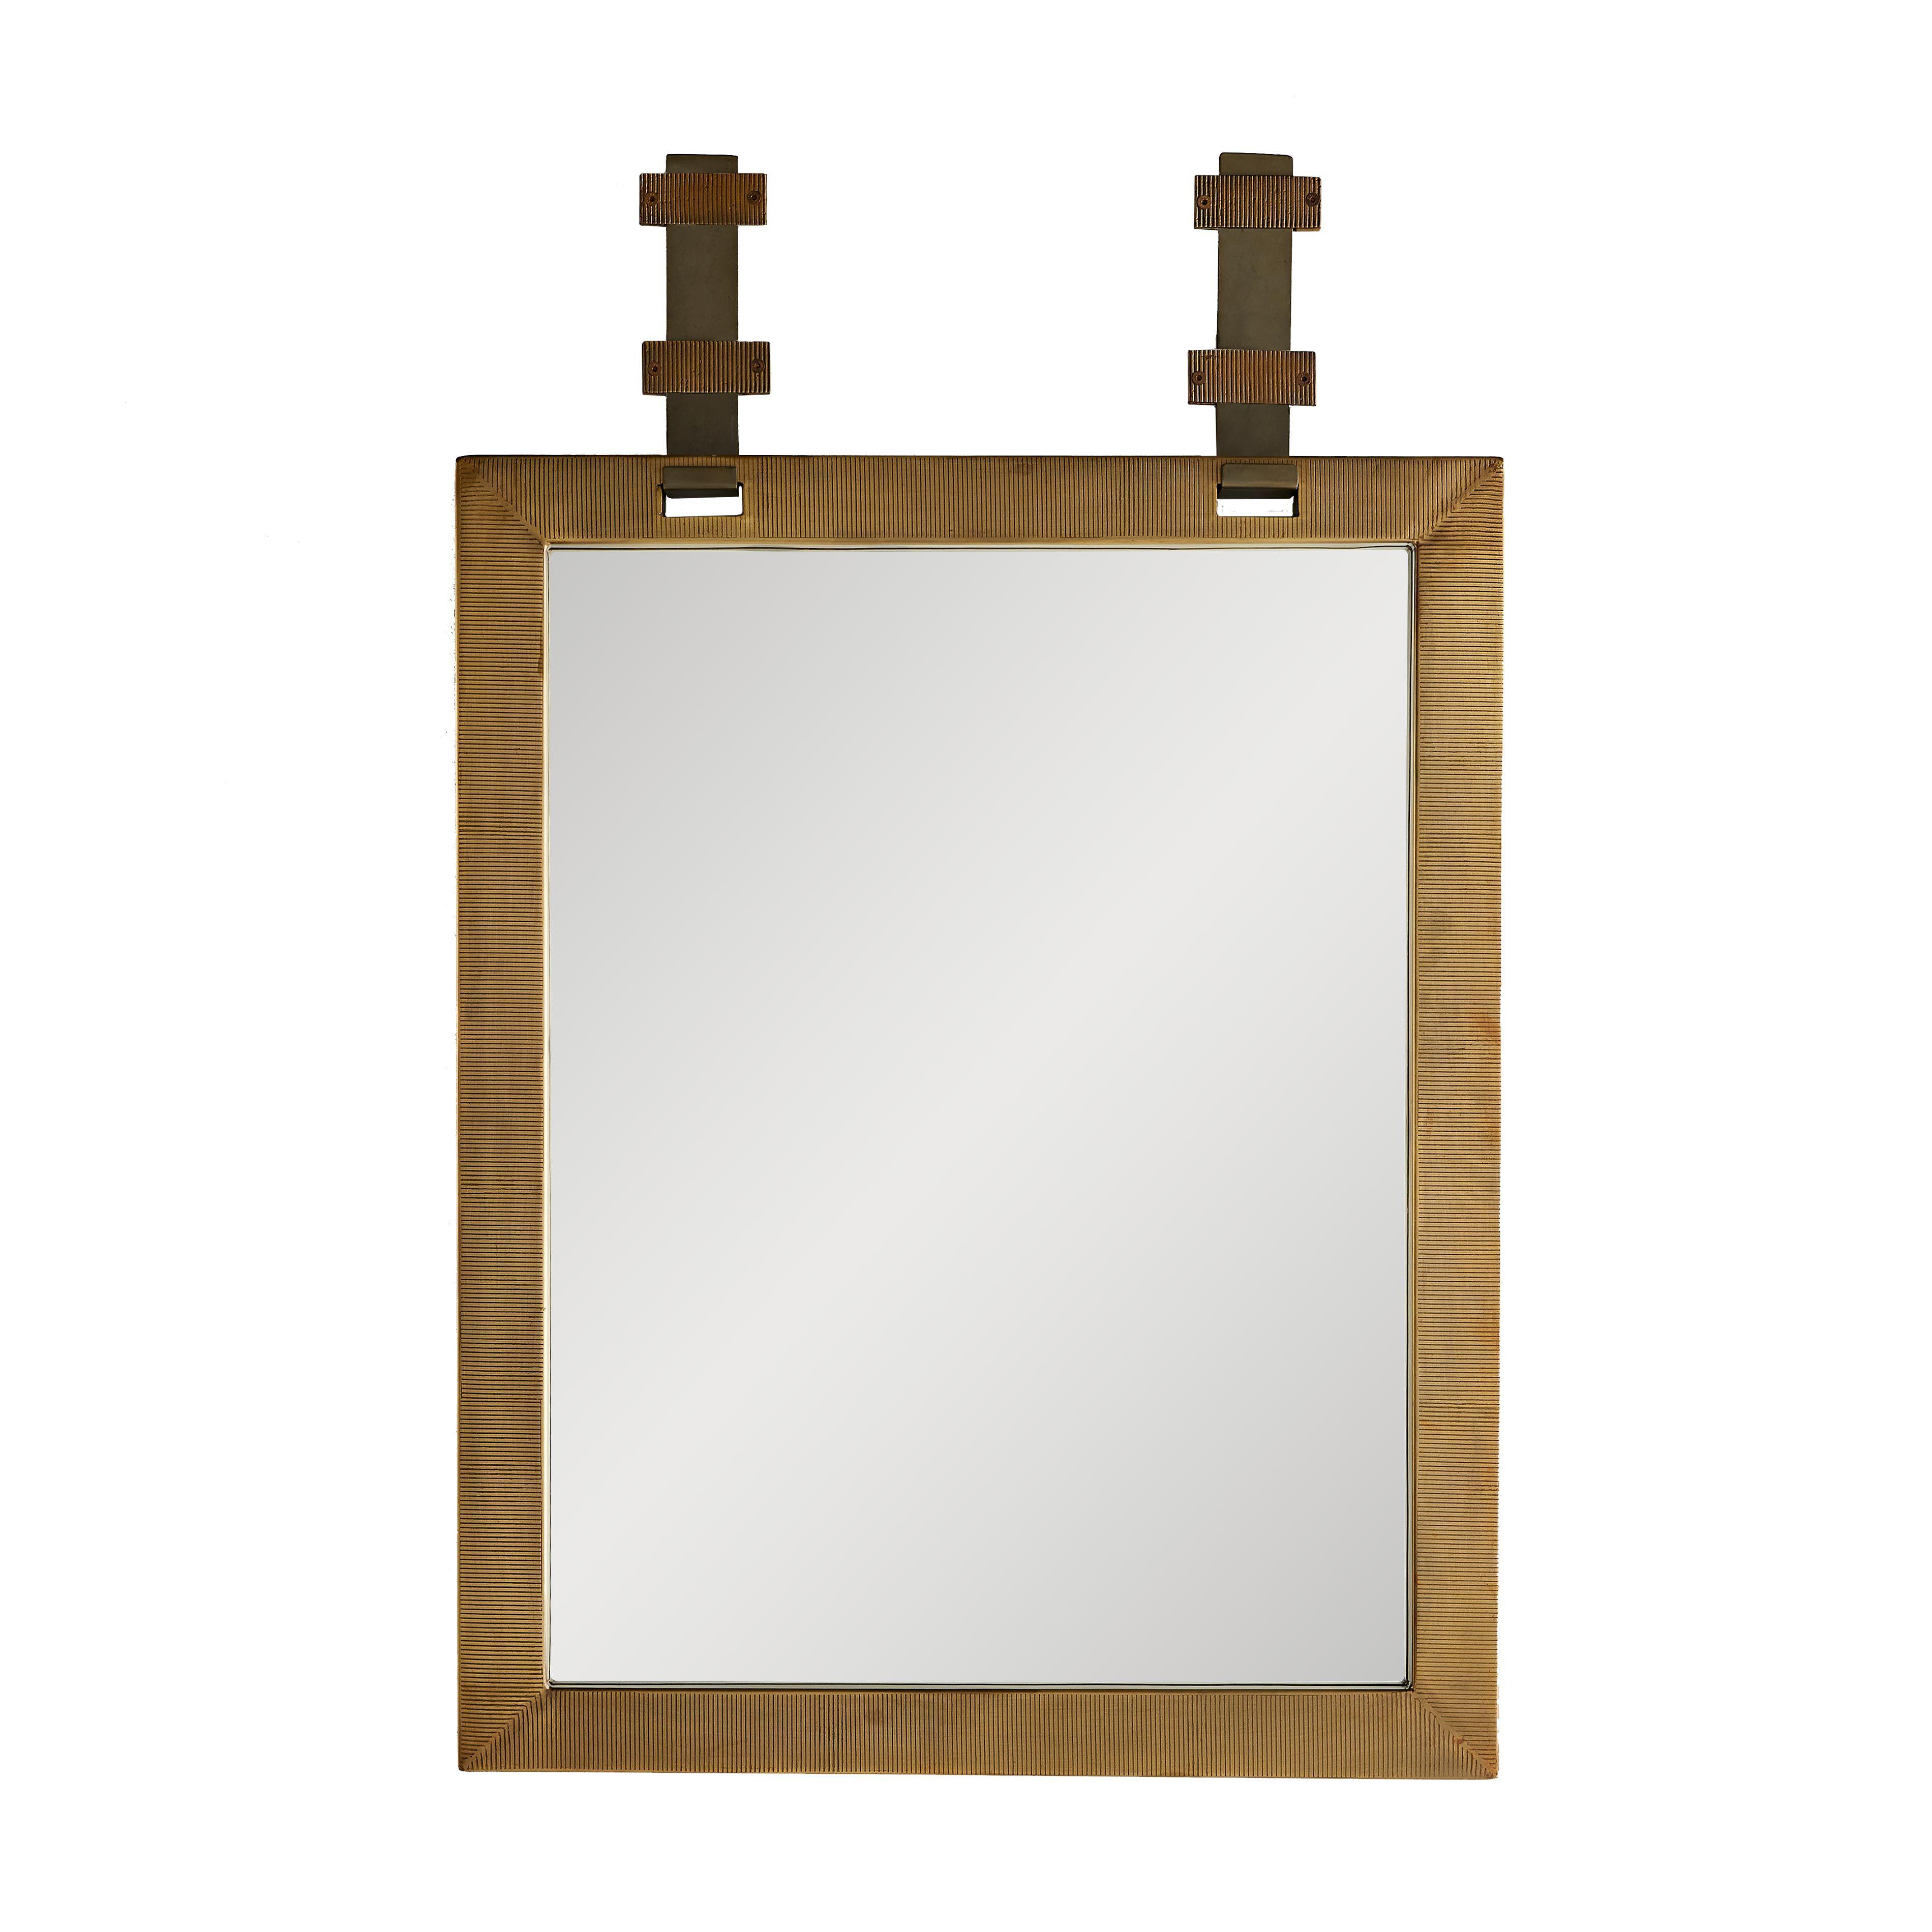 Купить Настенное зеркало Belmont Mirror в интернет-магазине roooms.ru